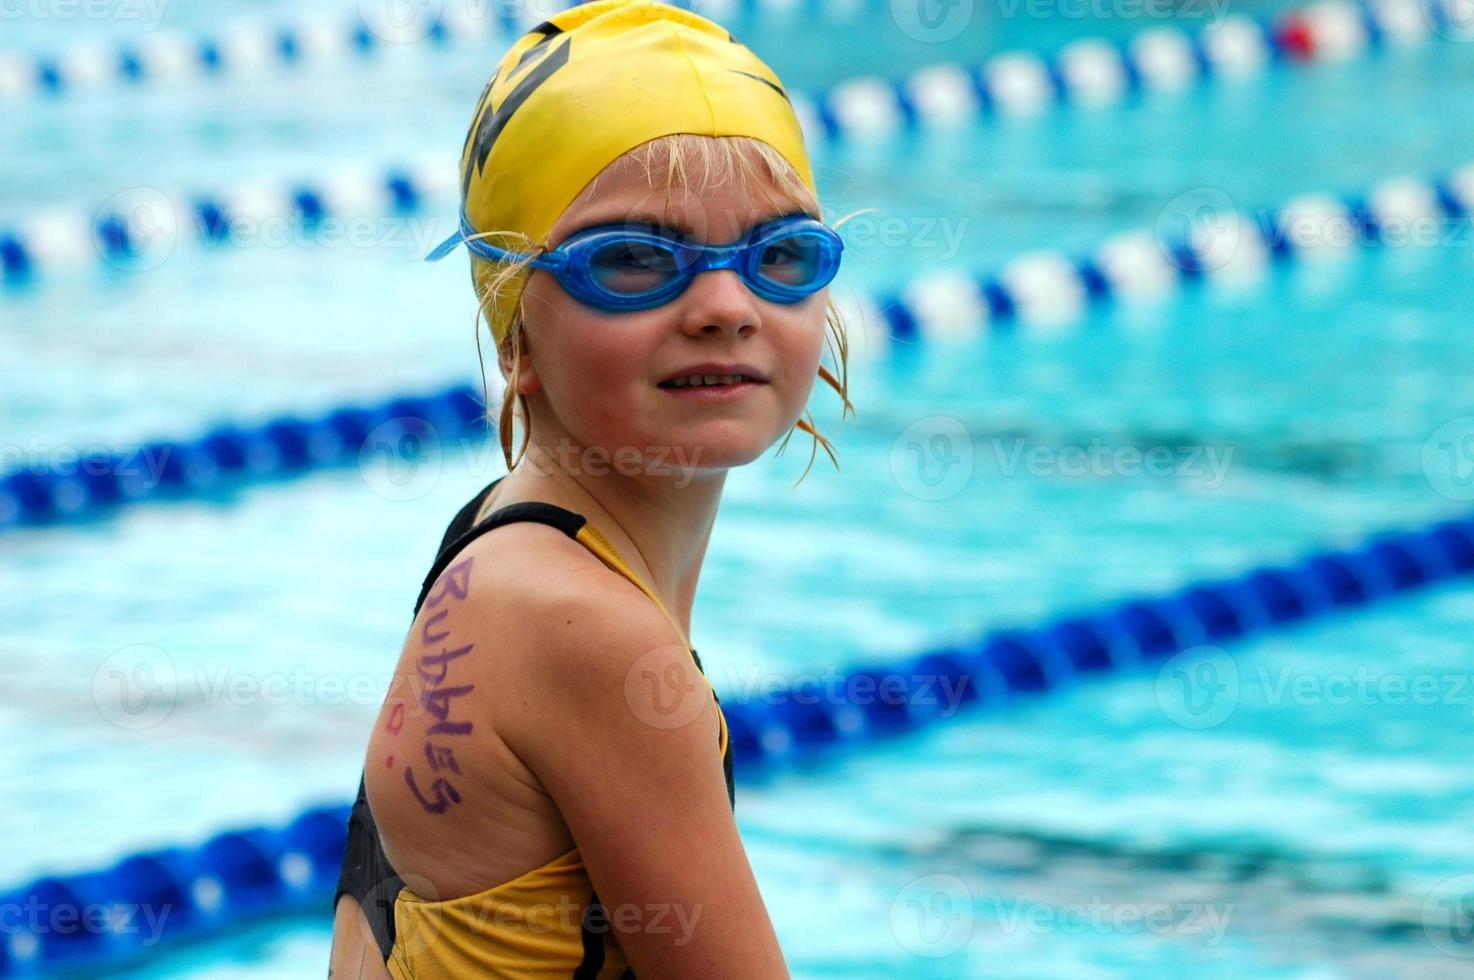 jovem nadador no encontro de natação foto